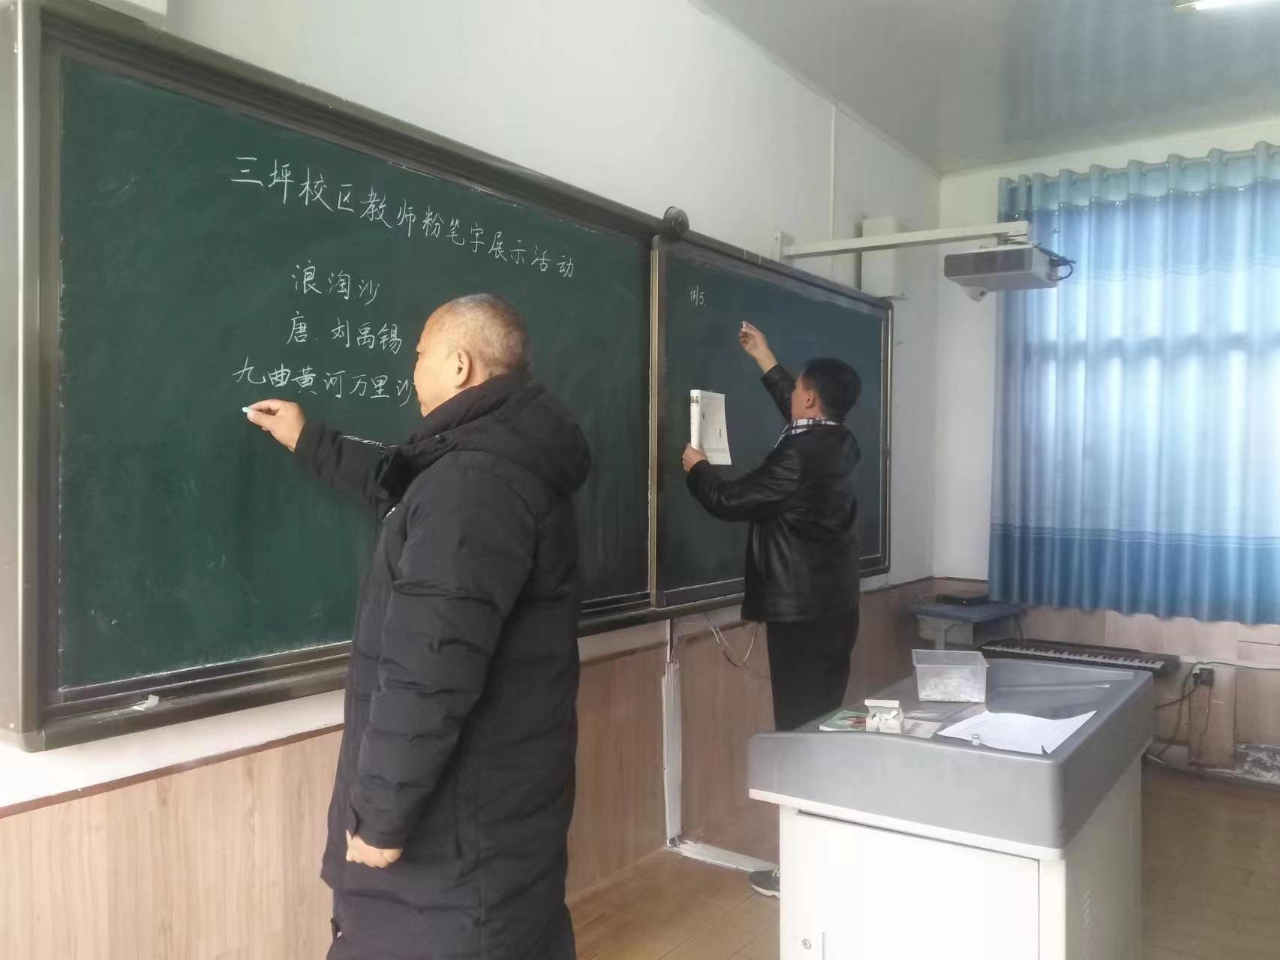 汉阴县实验小学教育集团太平校区举办教师粉笔字板书设计比赛活动